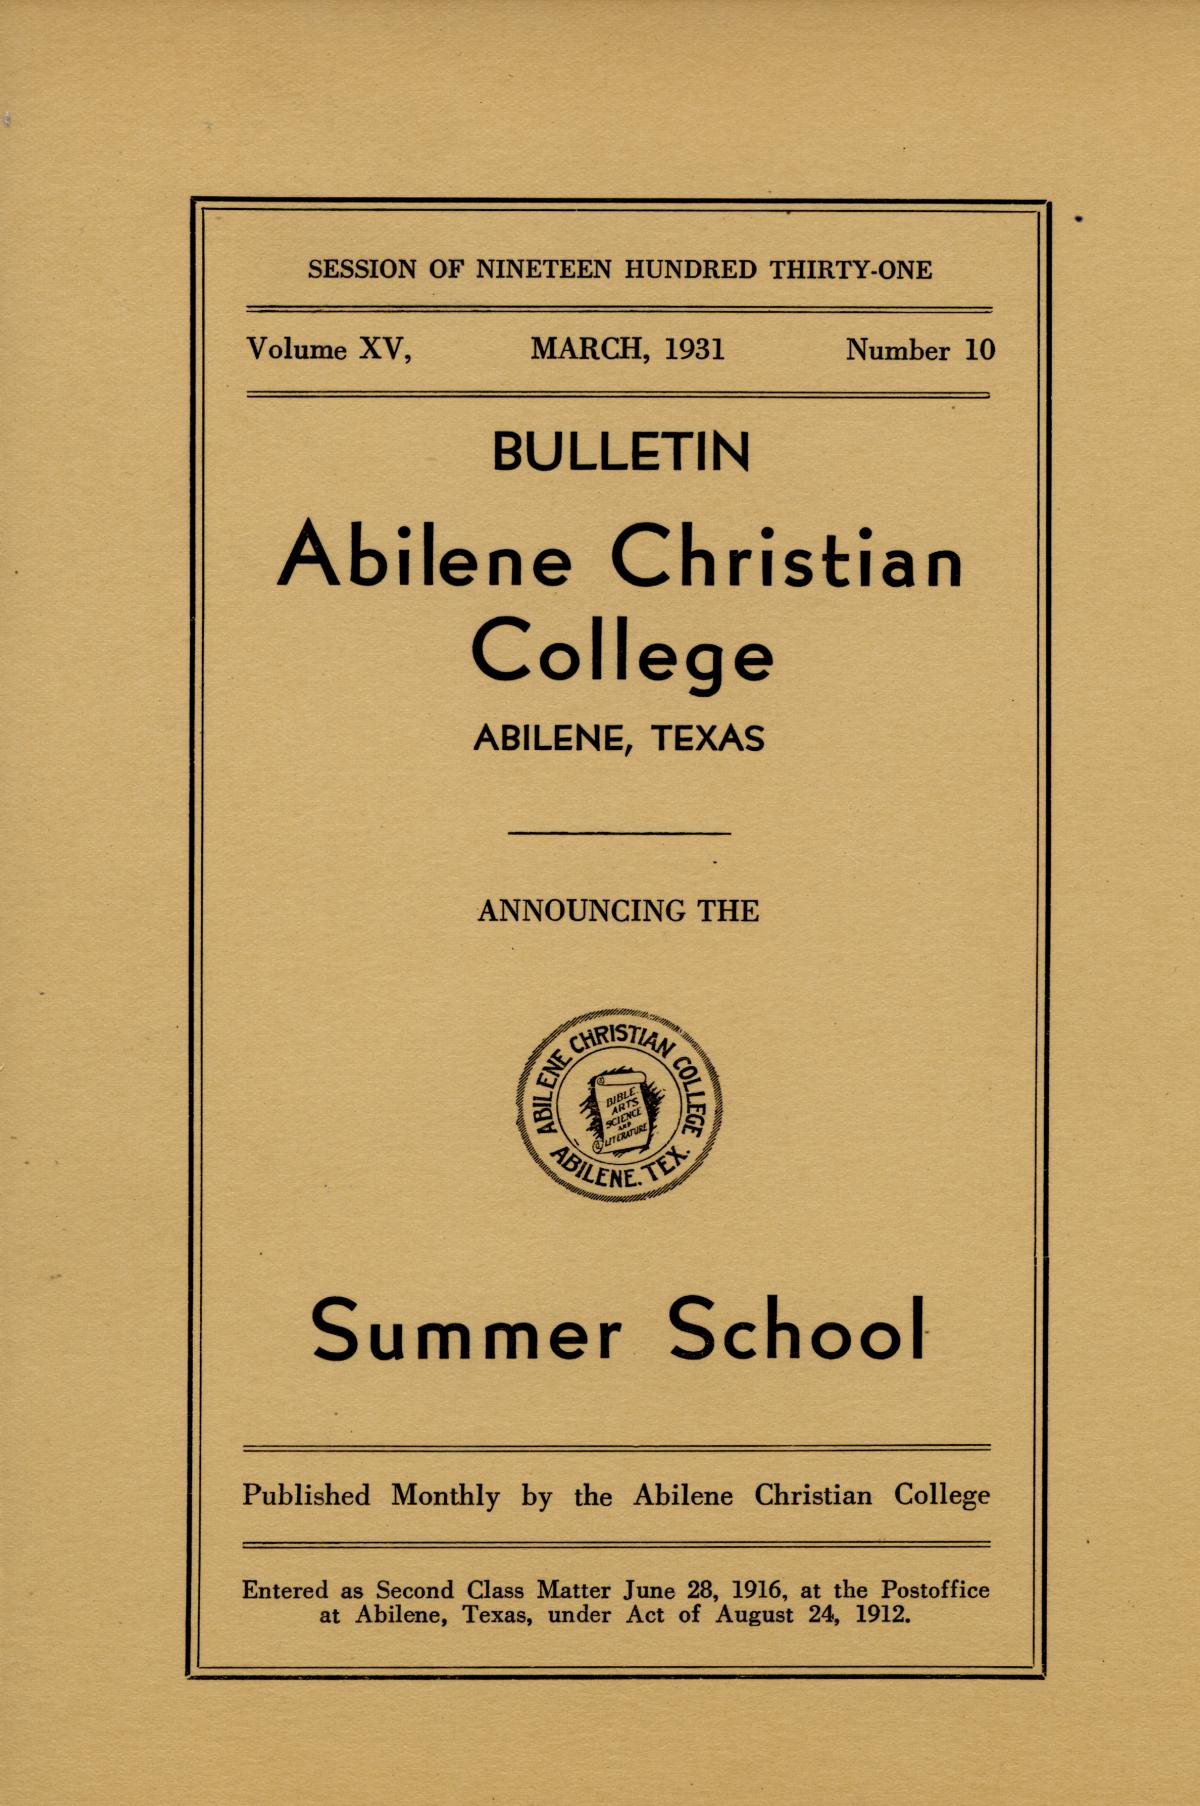 Catalog of Abilene Christian College, 1931
                                                
                                                    Front Cover
                                                